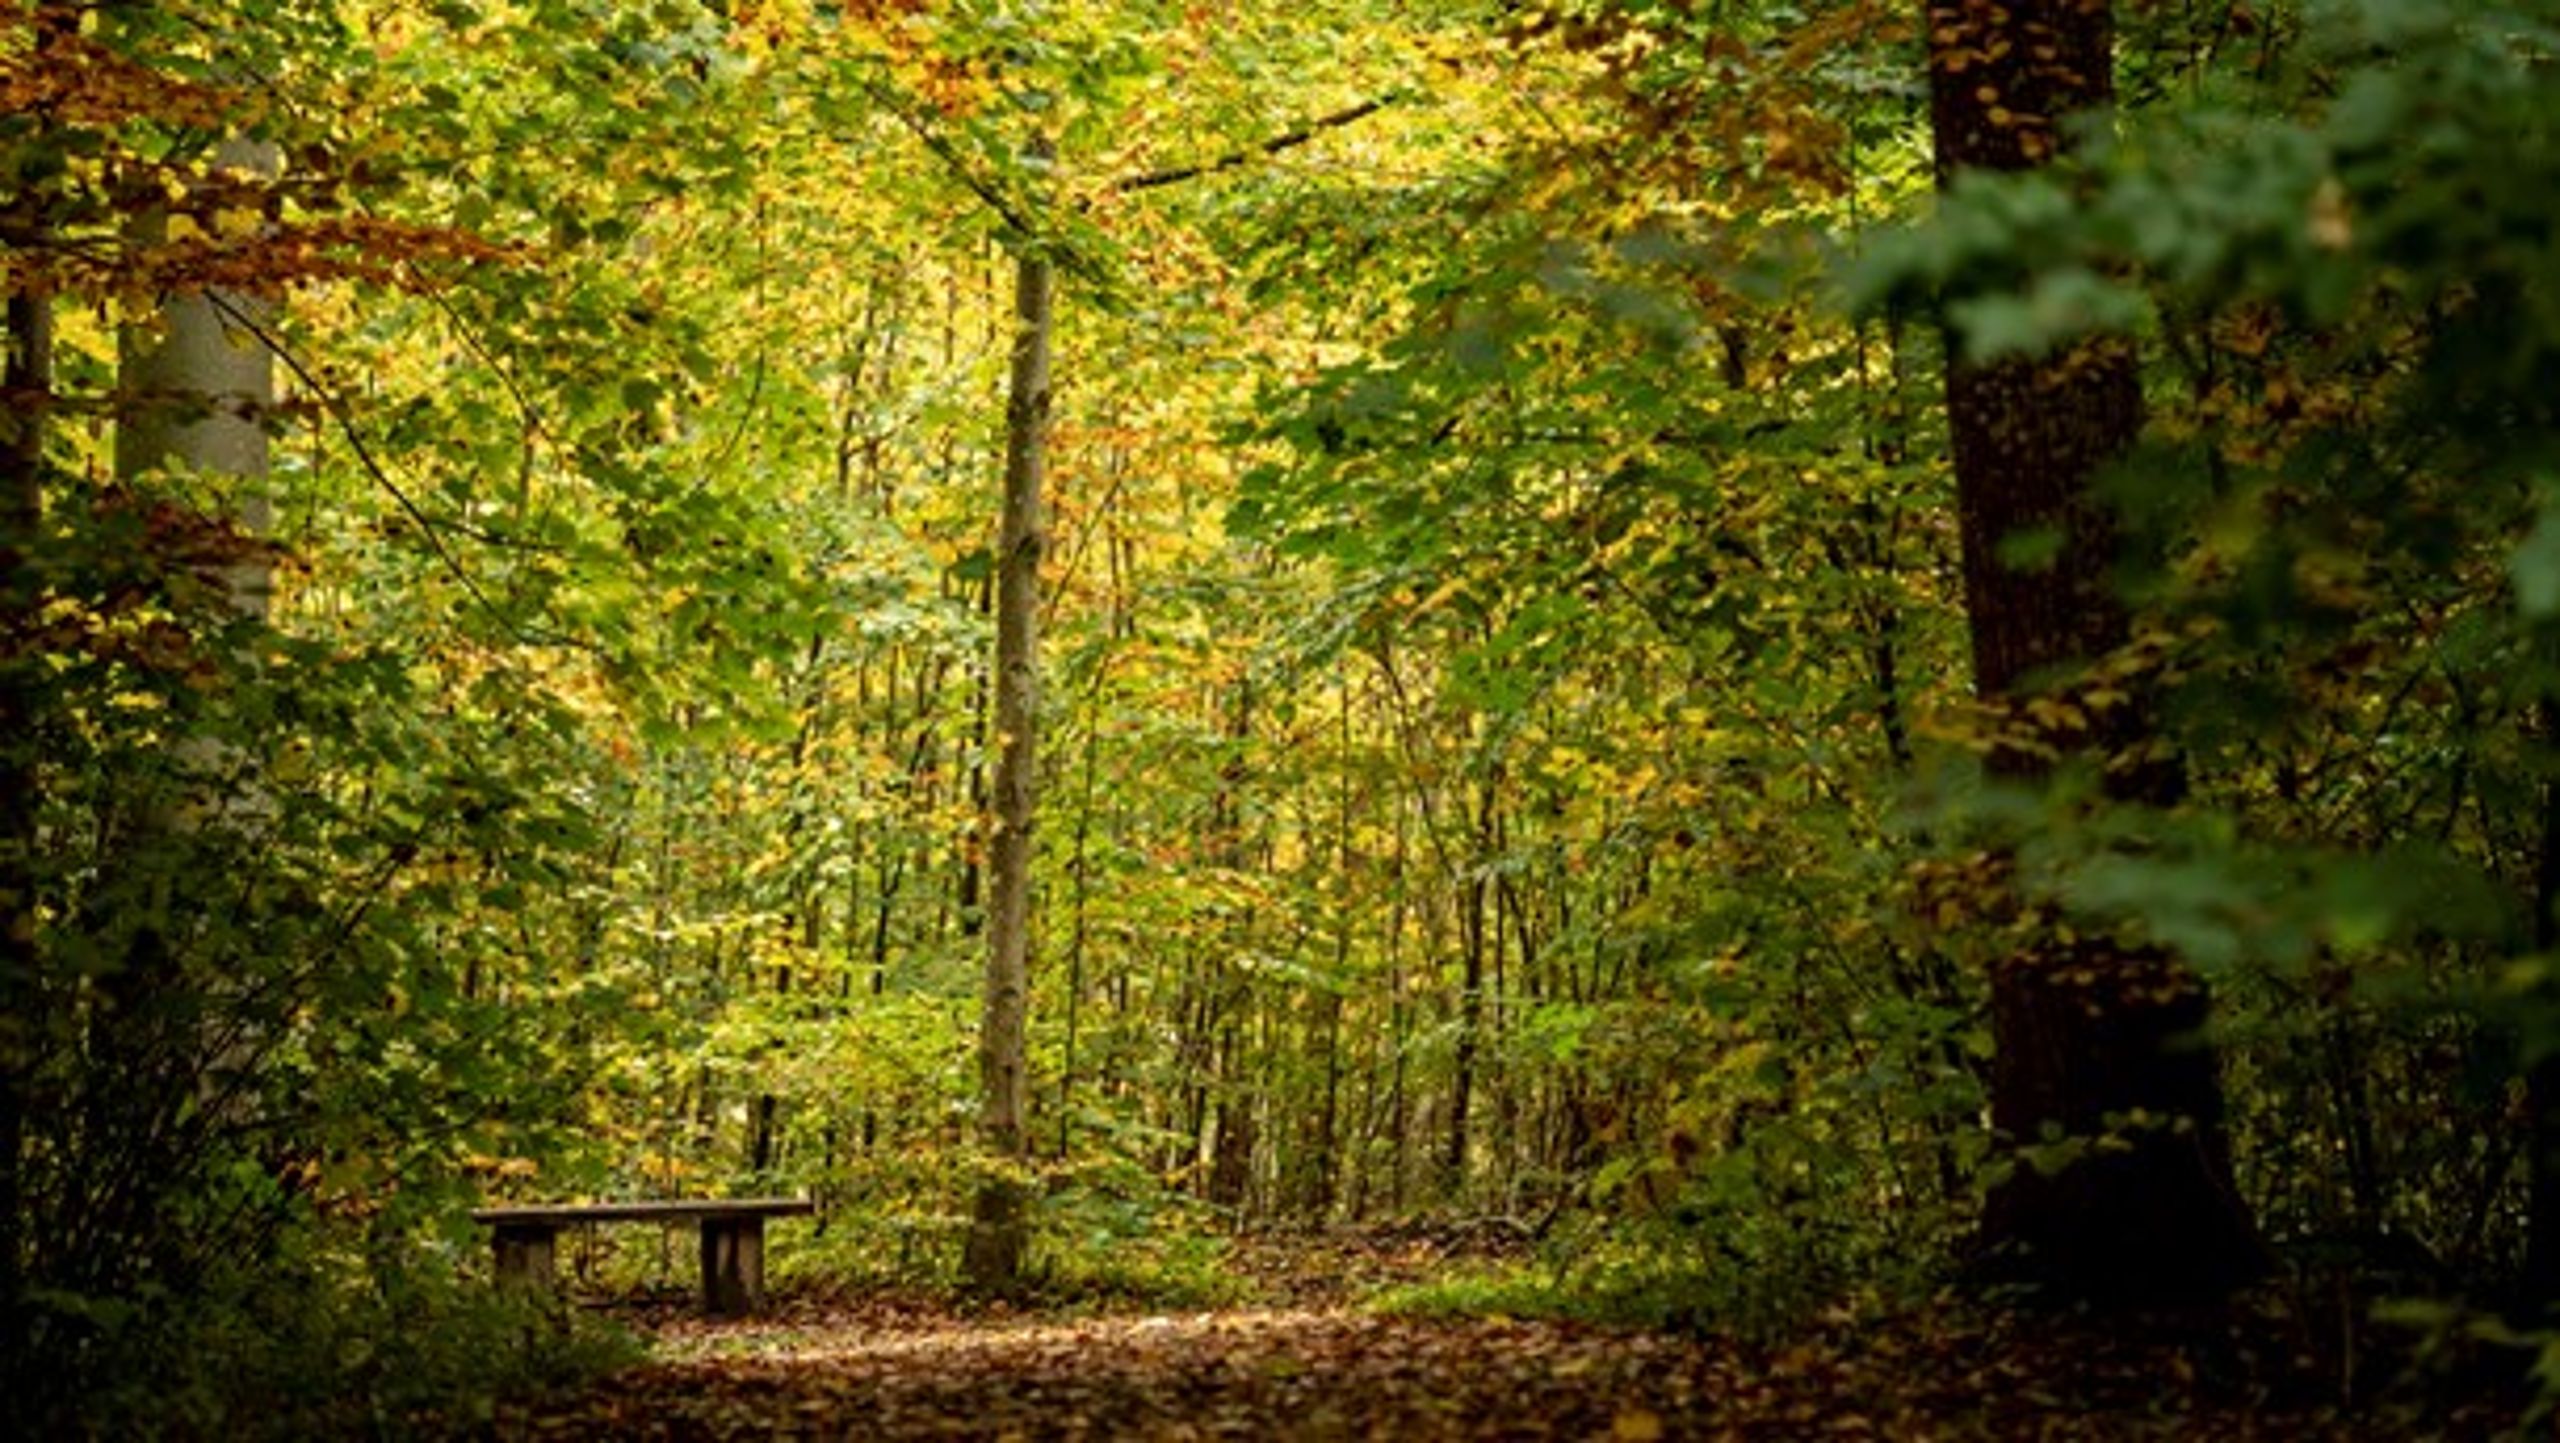 Varieret skov kan beskytte nåletræsbevoksninger mod&nbsp;storme eller massive bille- og svampeangreb, skriver skovbrugschef og skovrider.